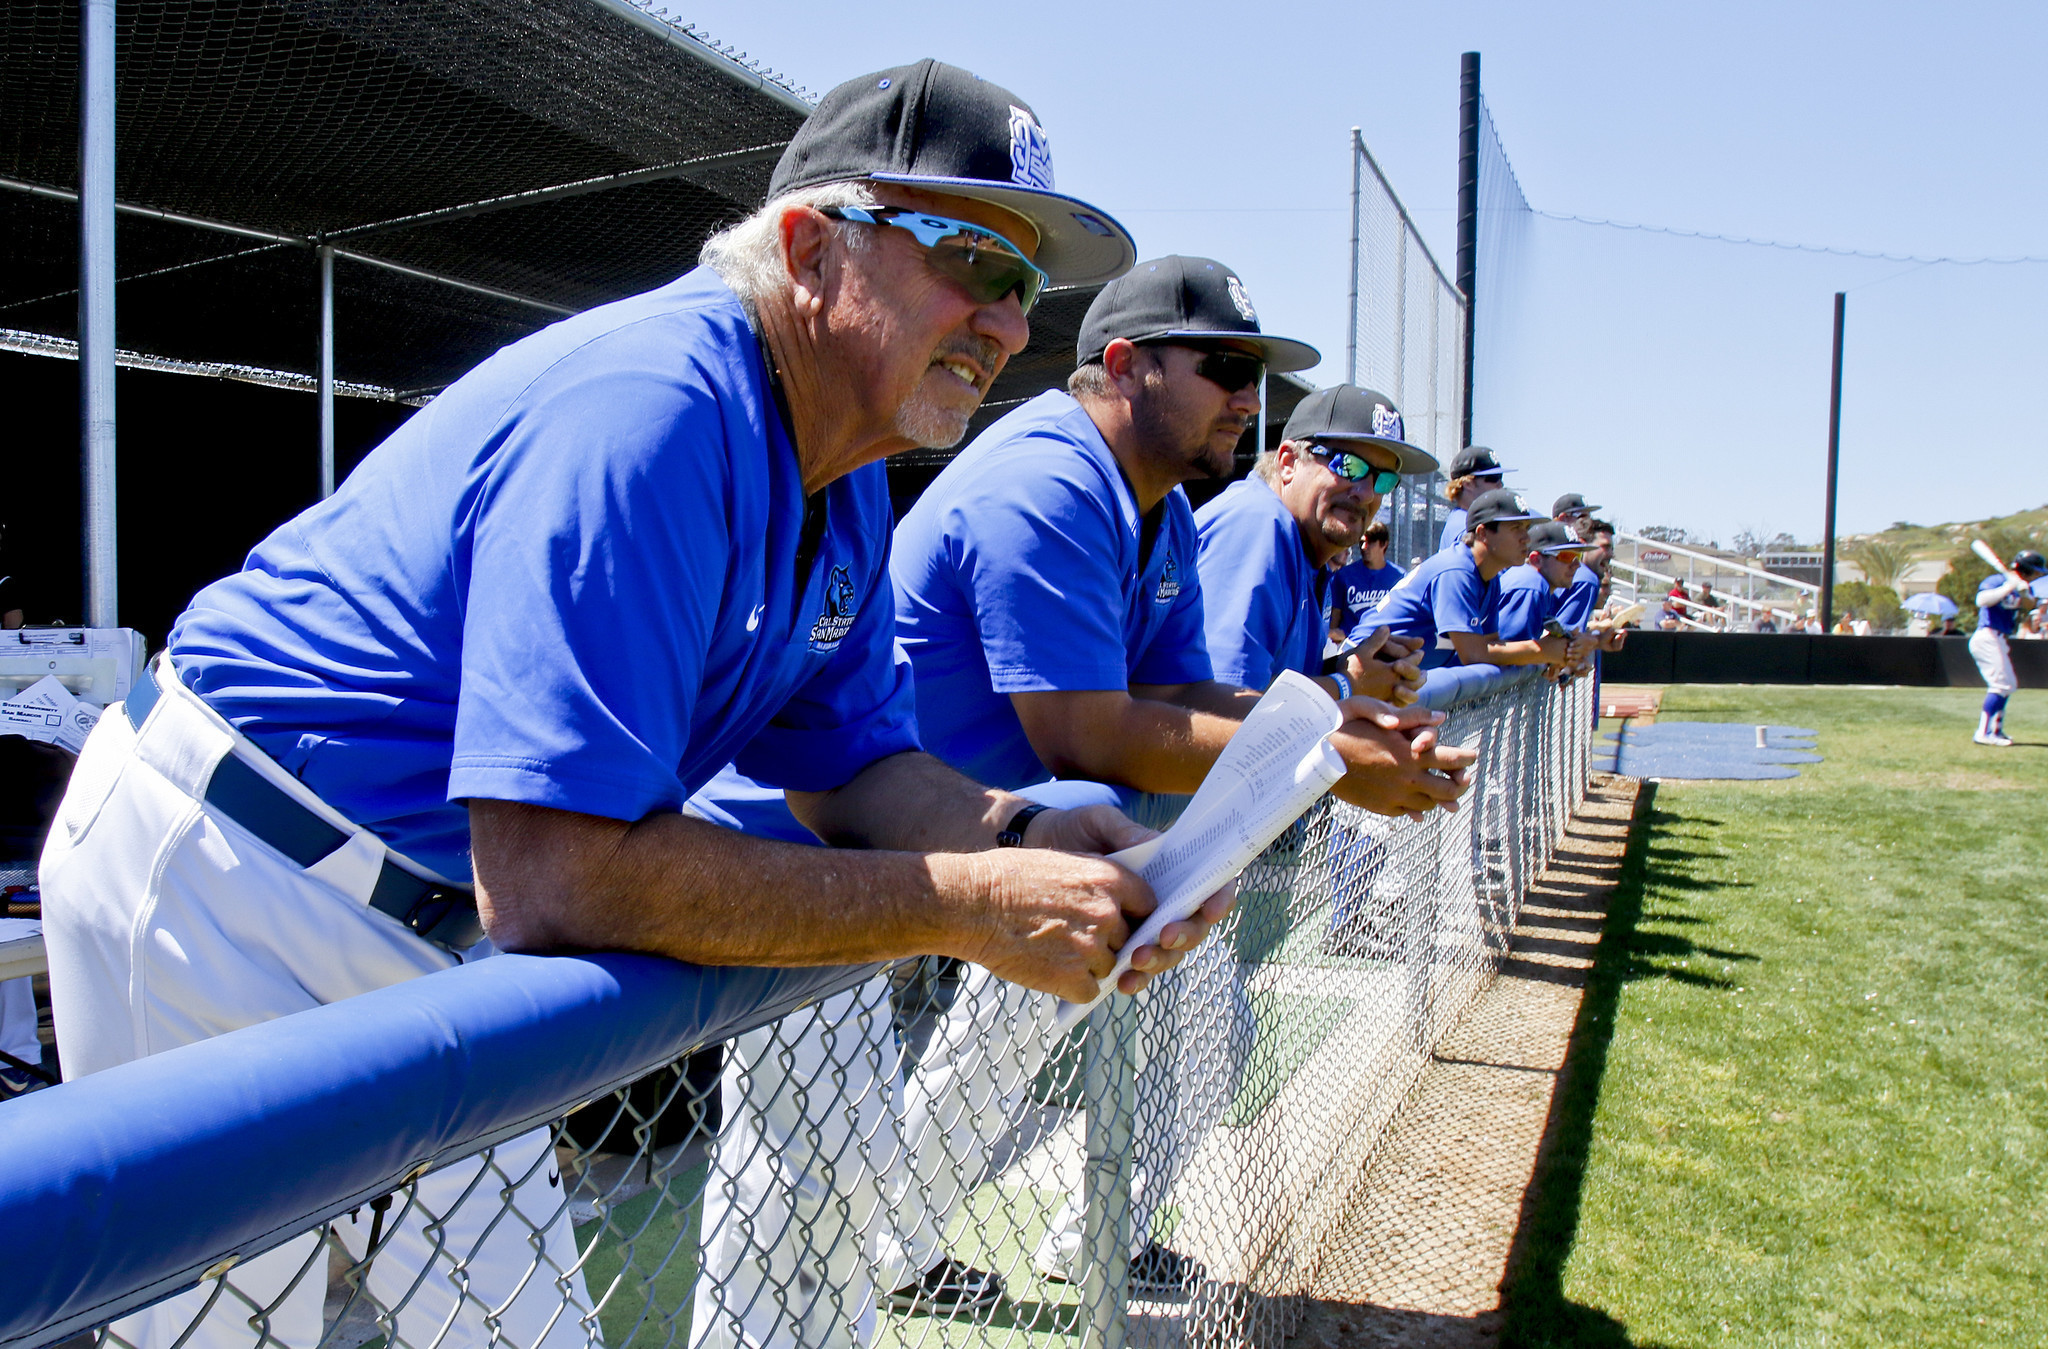 Dennis Pugh returning as Mission Bay baseball coach - The San Diego Union-Tribune